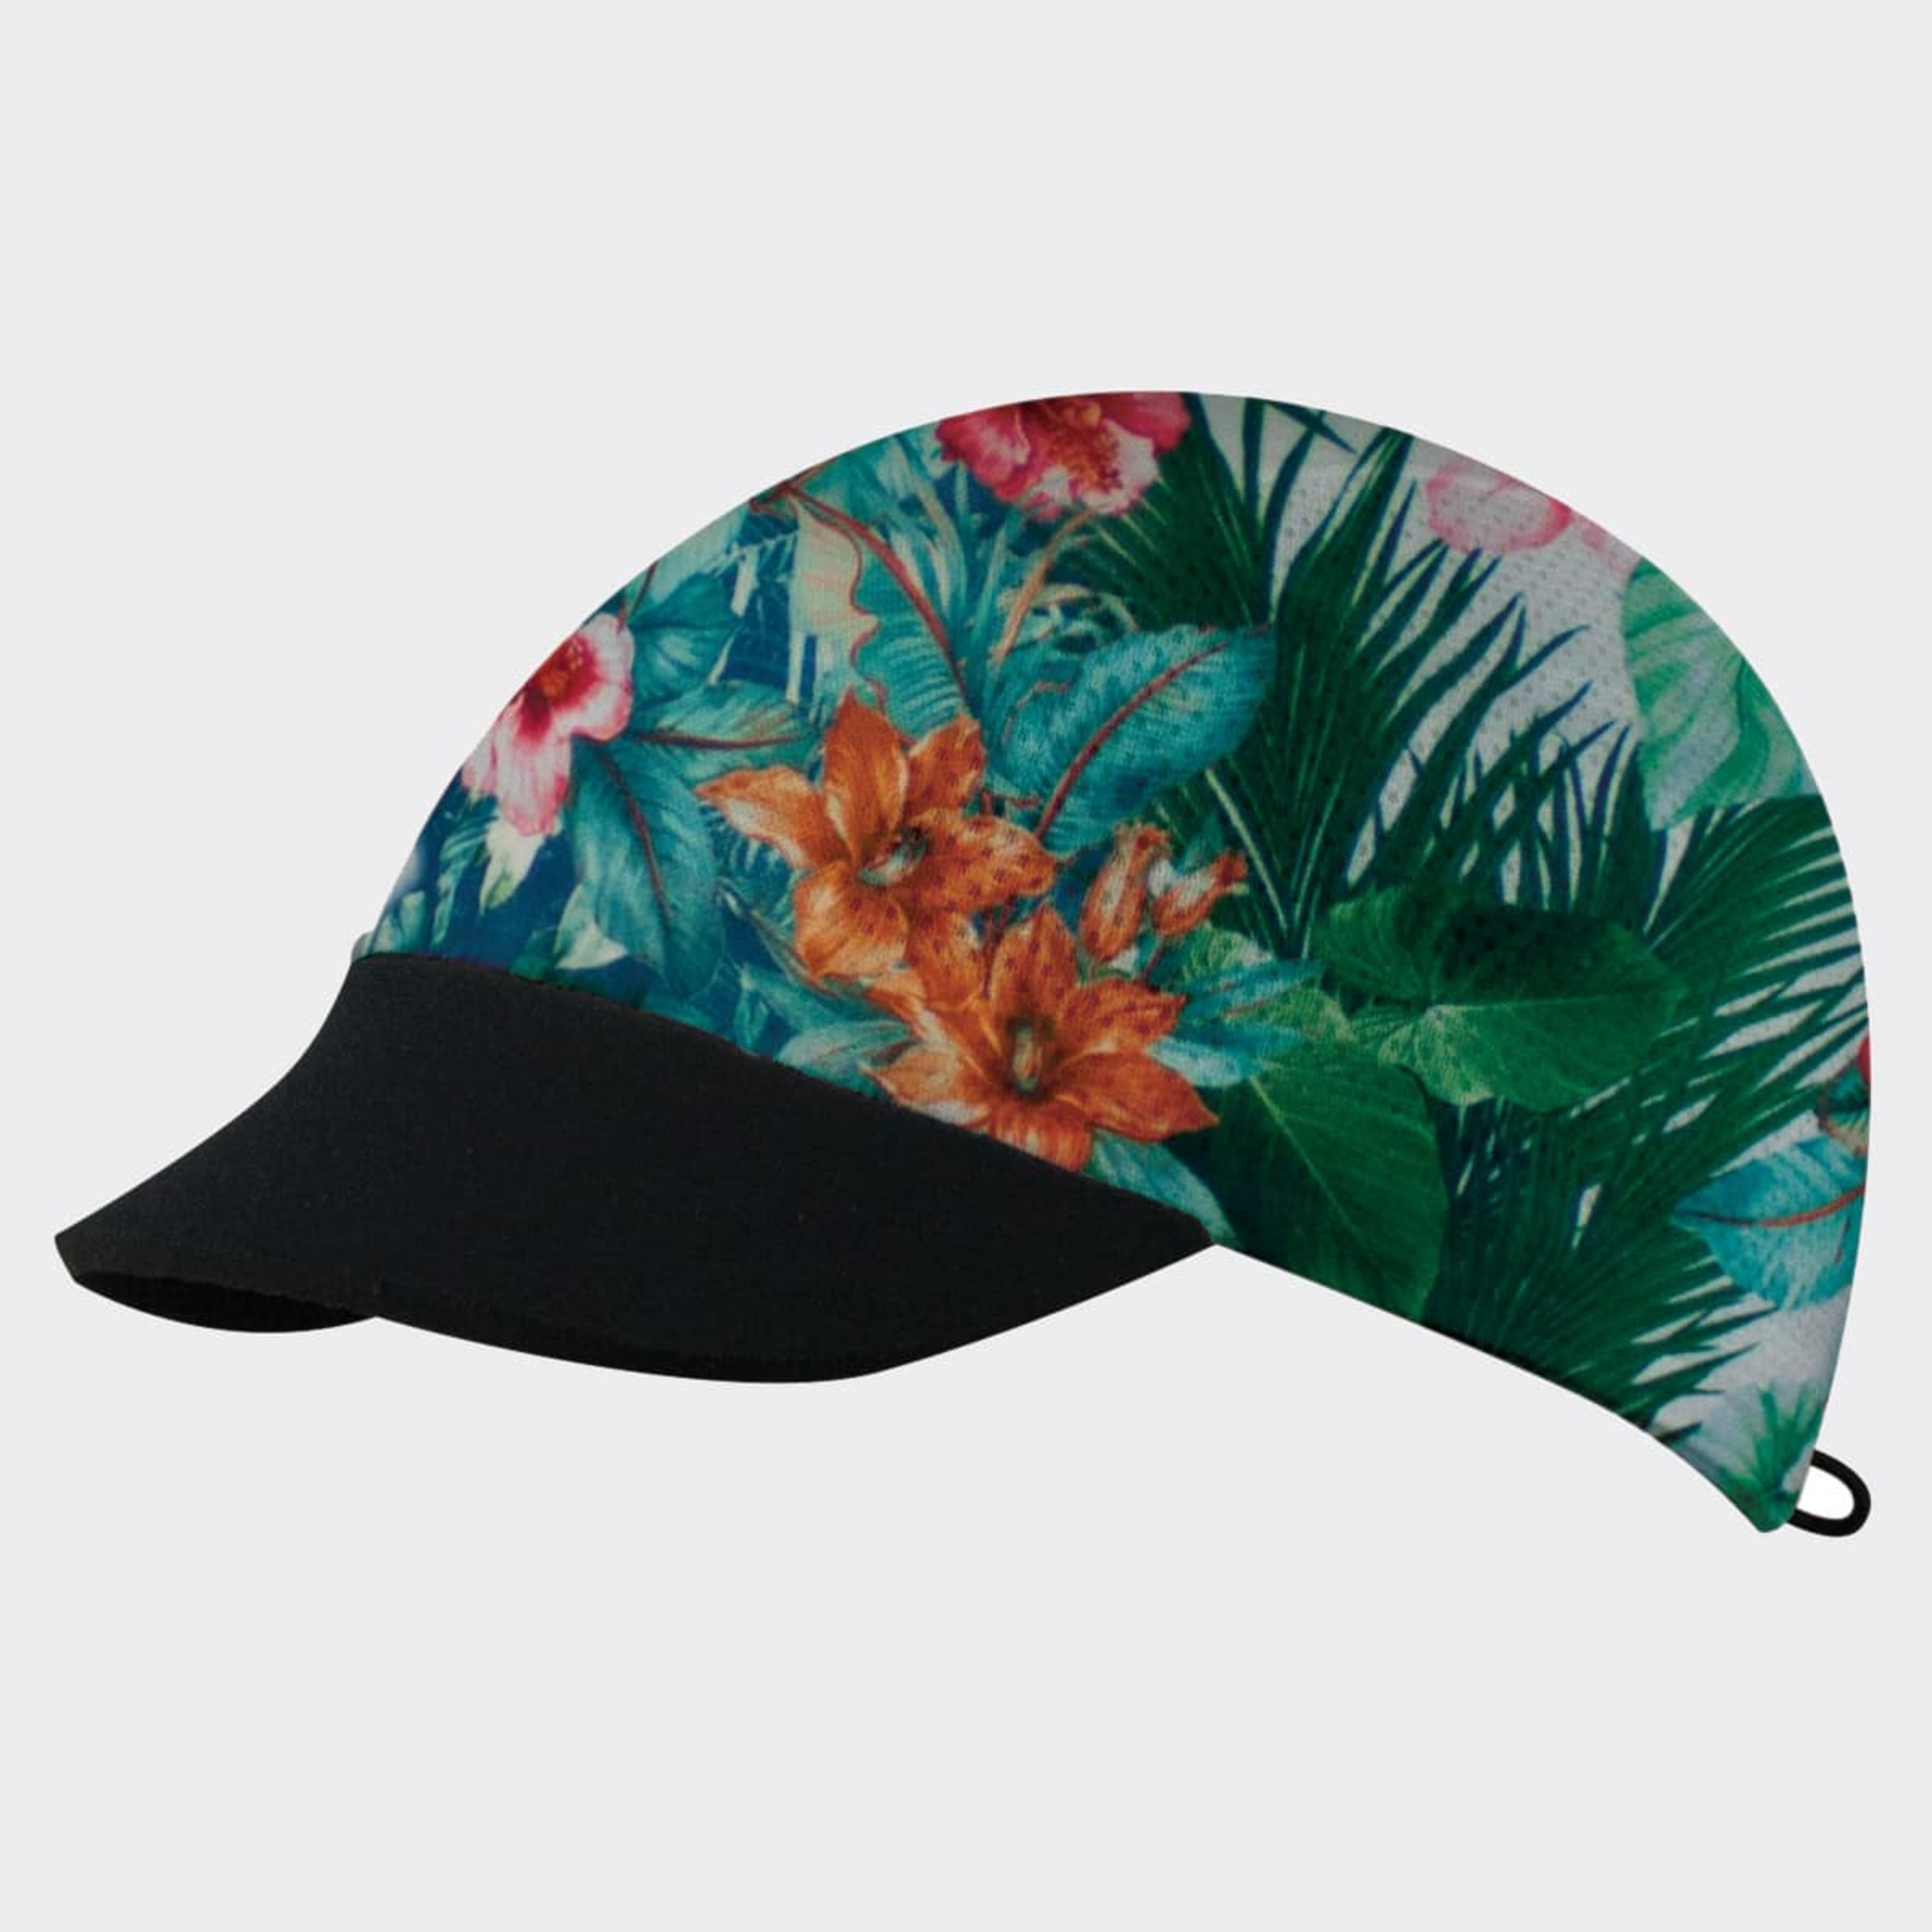 Gorra Coolcap Jungle - multicolor - 